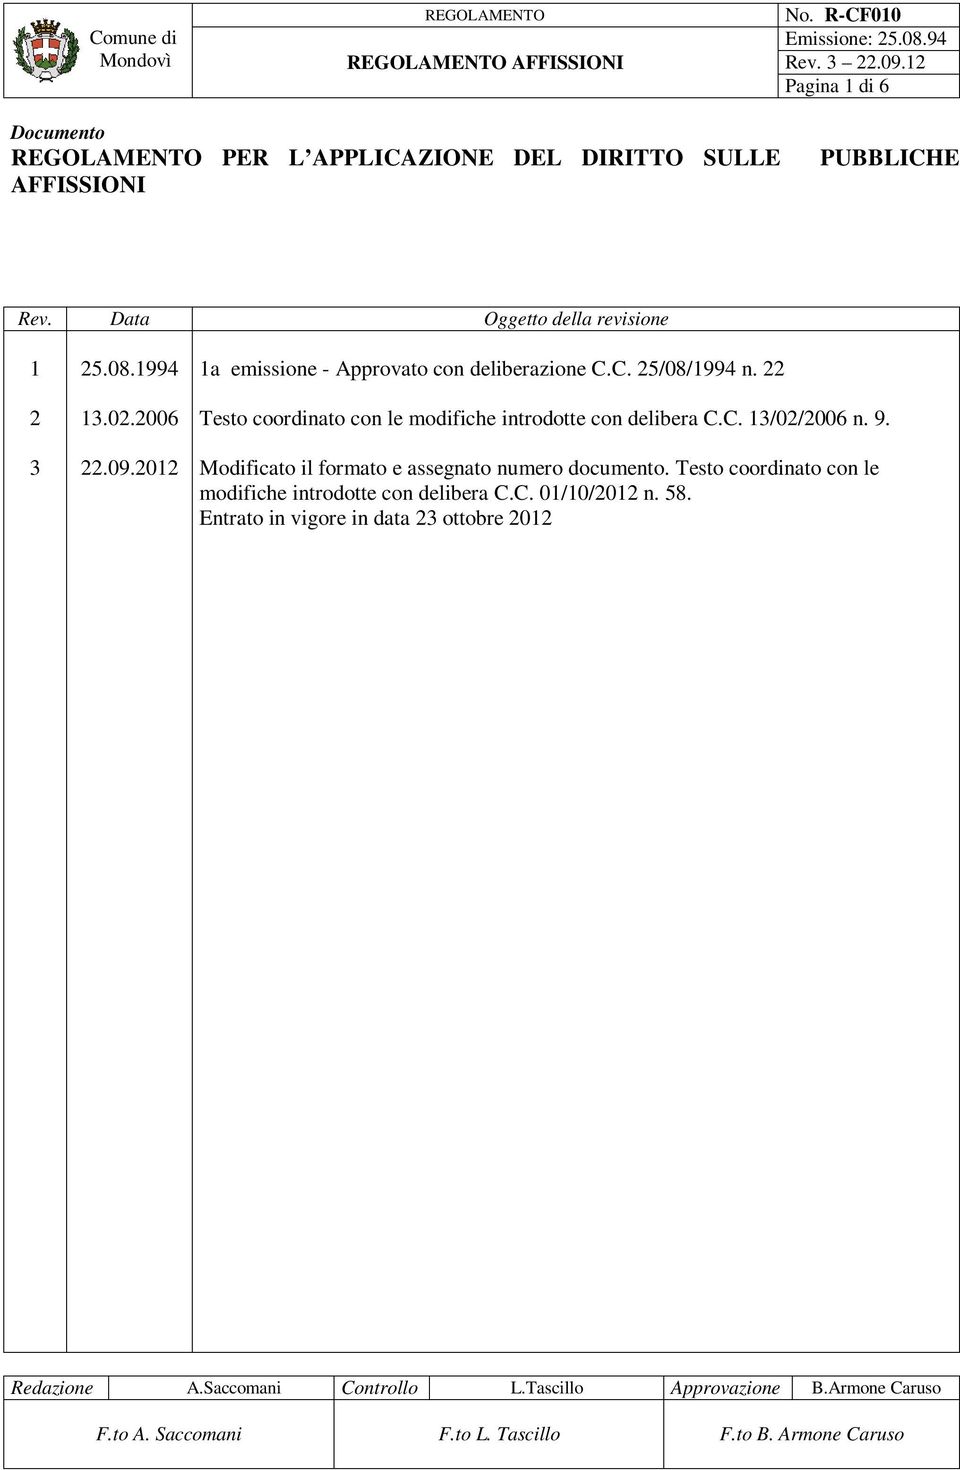 Modificato il formato e assegnato numero documento. Testo coordinato con le modifiche introdotte con delibera C.C. 01/10/2012 n. 58.